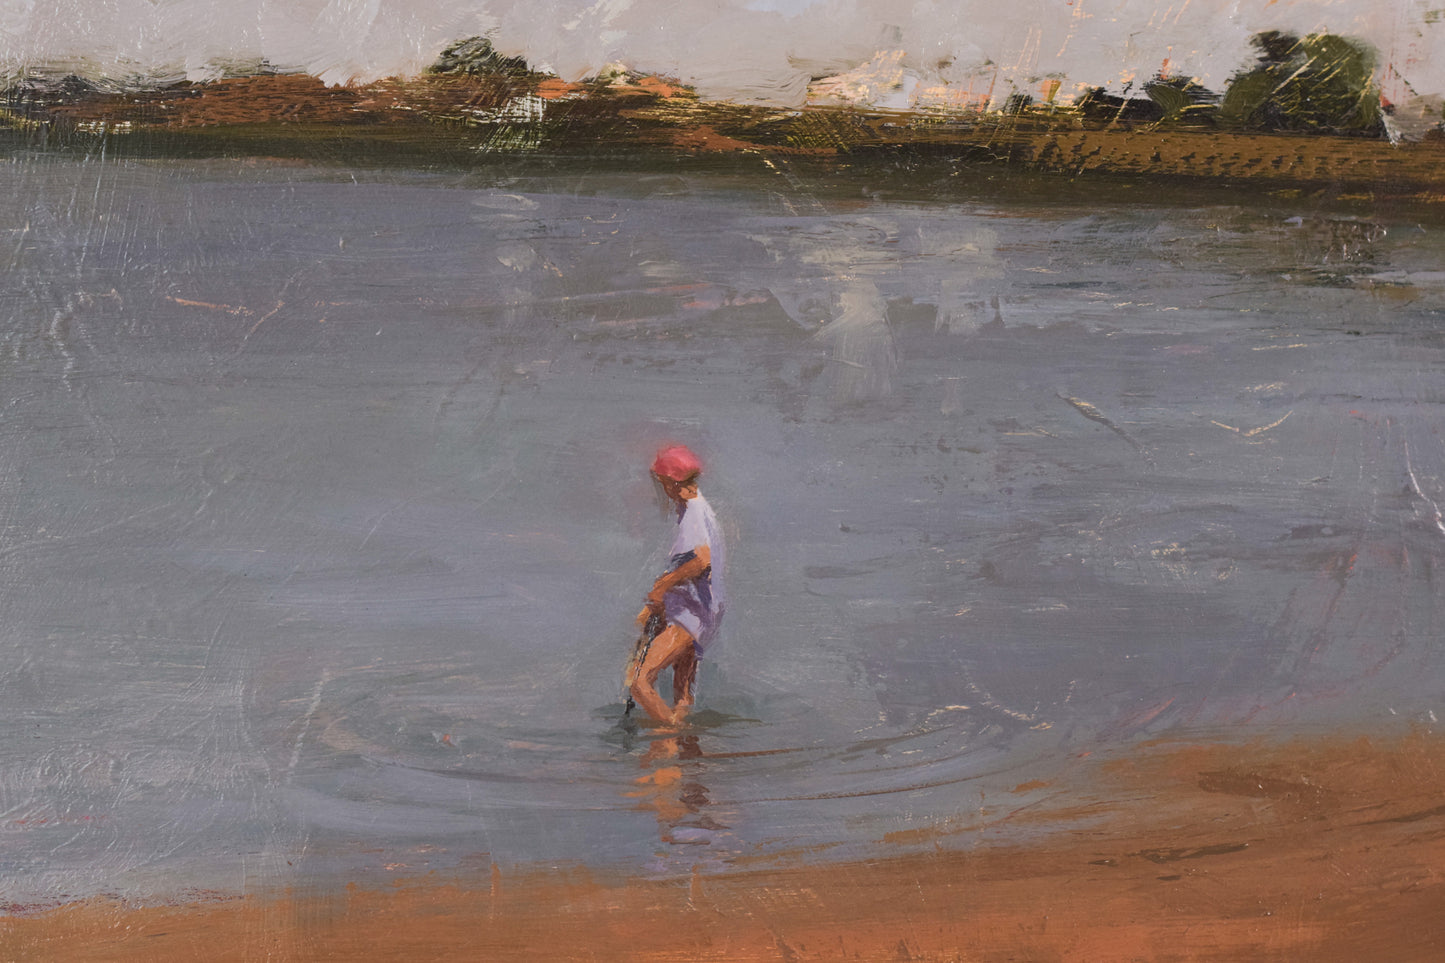 'Pescant al Rio' ('Fishing in the River') by Maria Perello